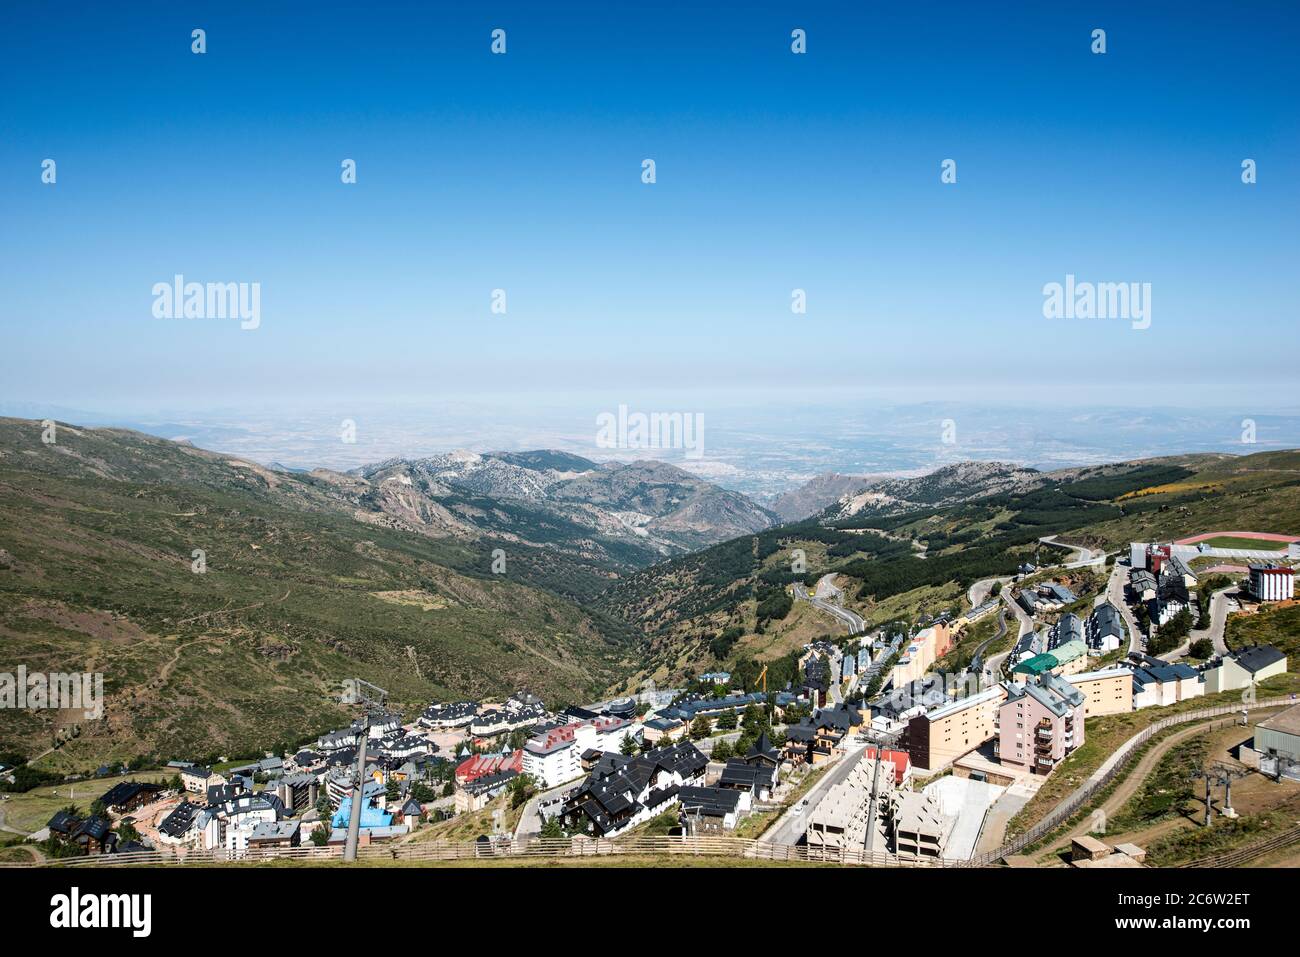 Panoramic view of the Sierra Nevada Stock Photo